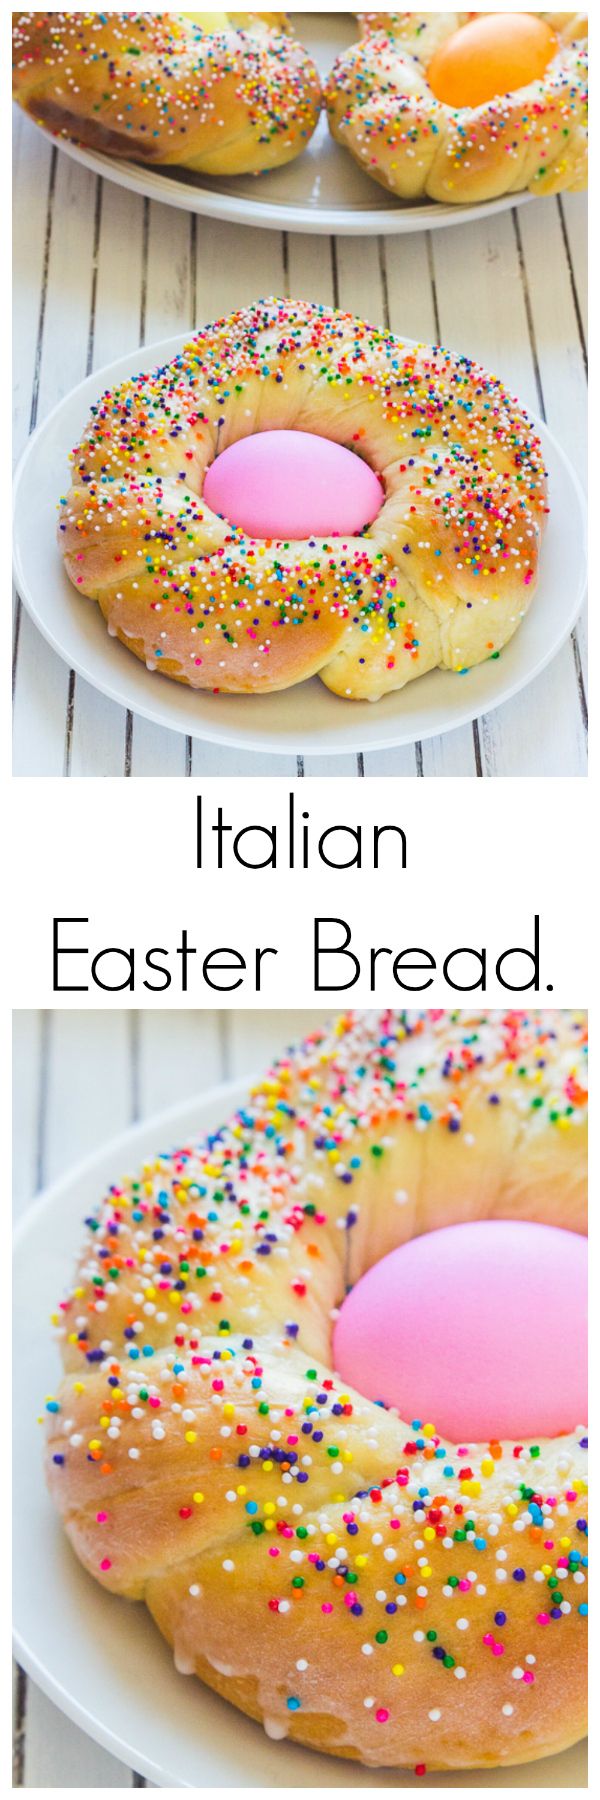 Italian Easter Bread.